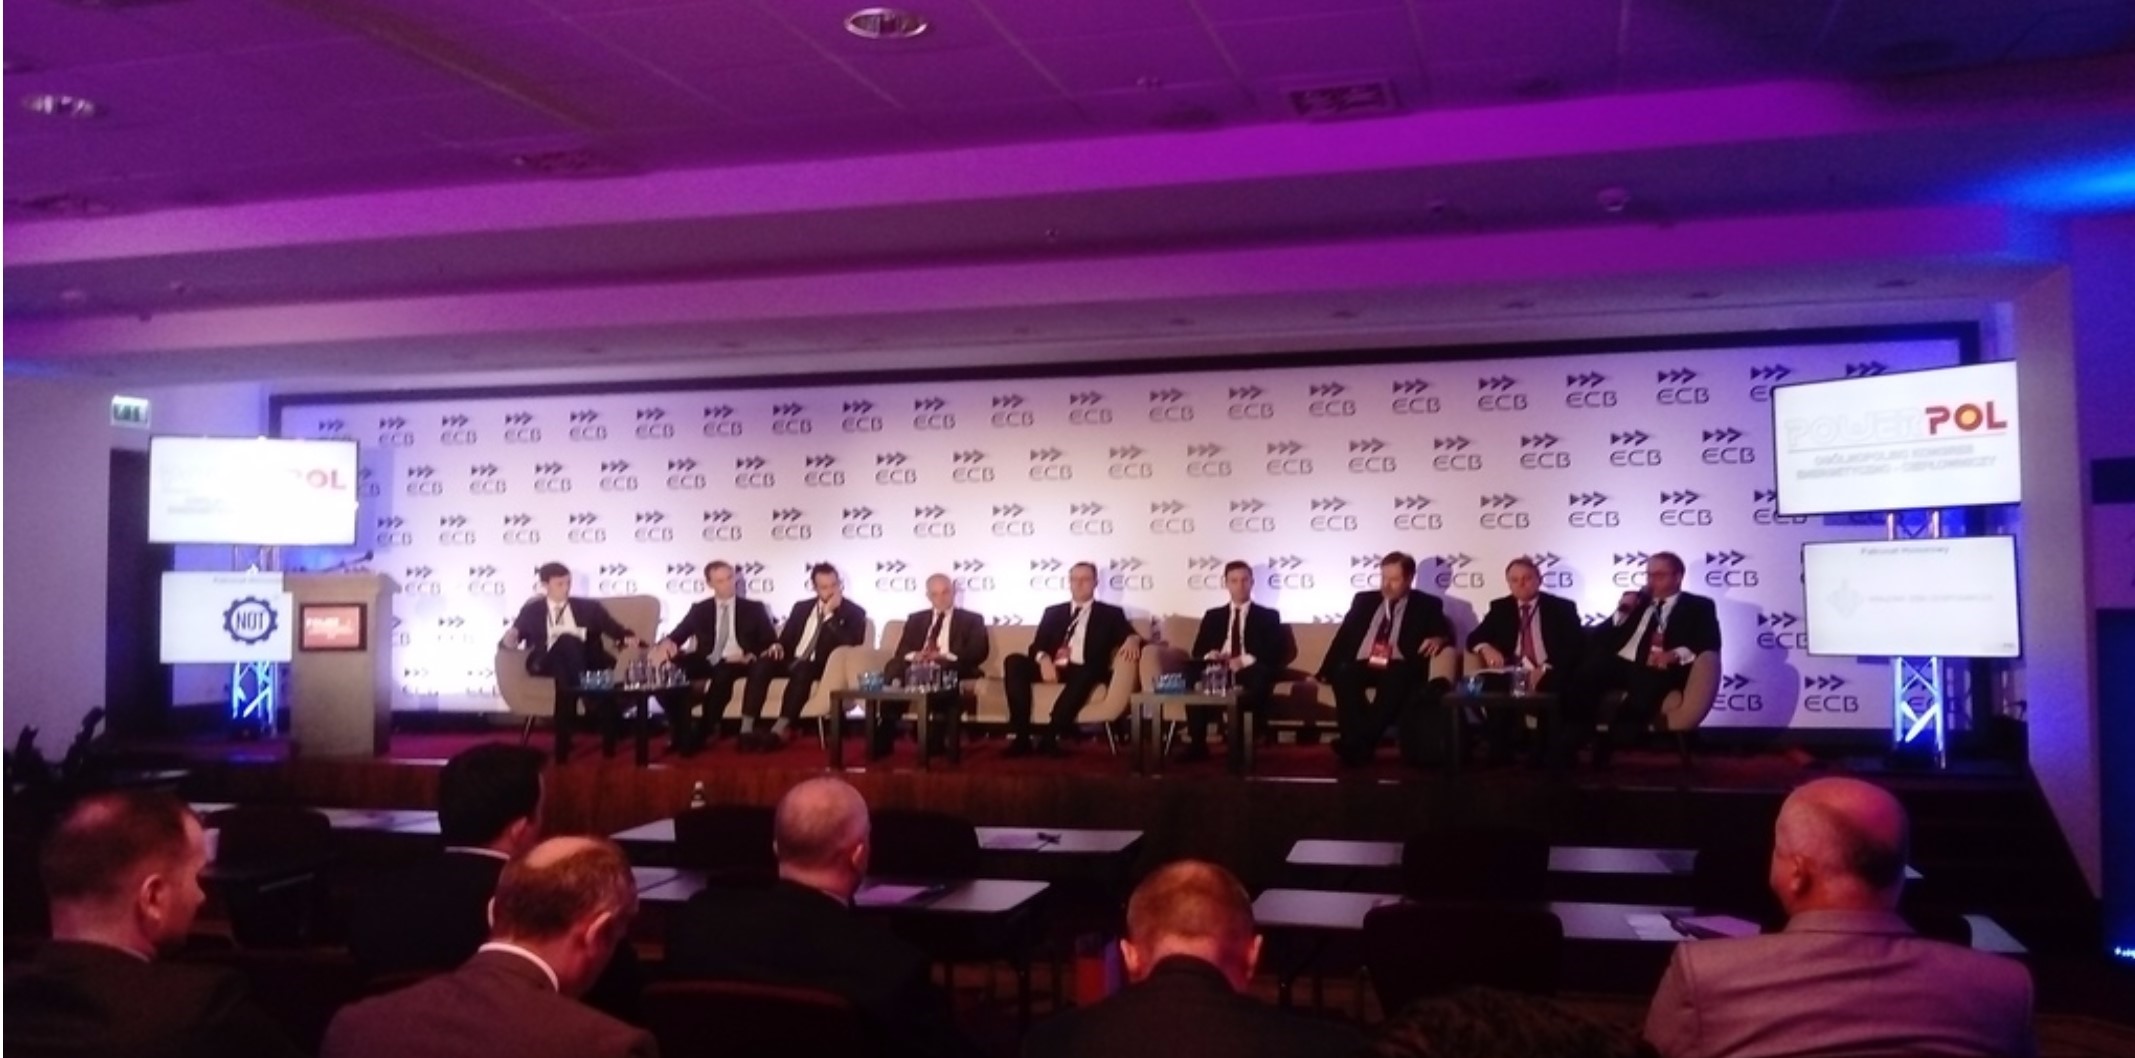 W ramach konferencji Powerpol odbył się panel „Gaz w polityce energetycznej Polski”.